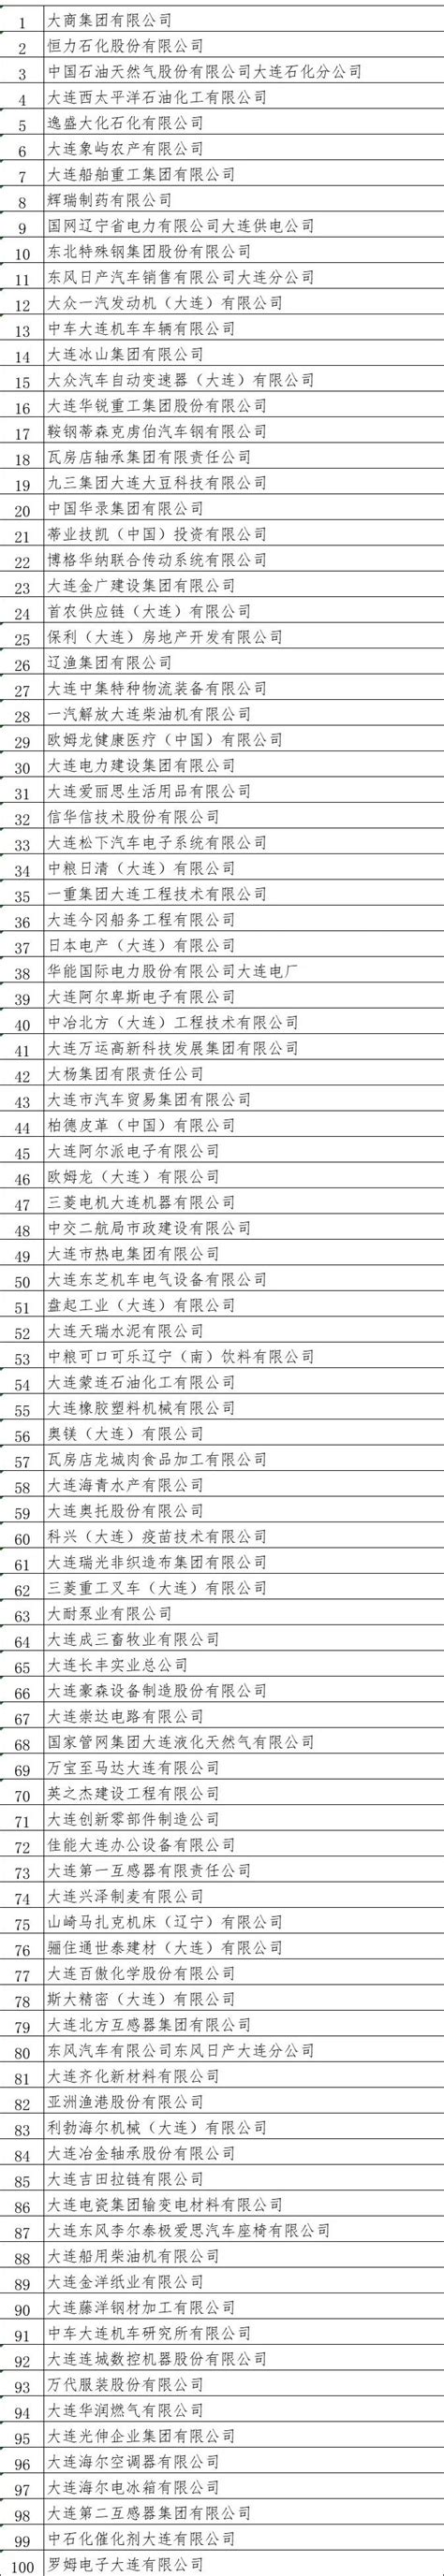 2021年辽宁各市GDP排行榜 大连排名第一 沈阳排名第二_腾讯新闻